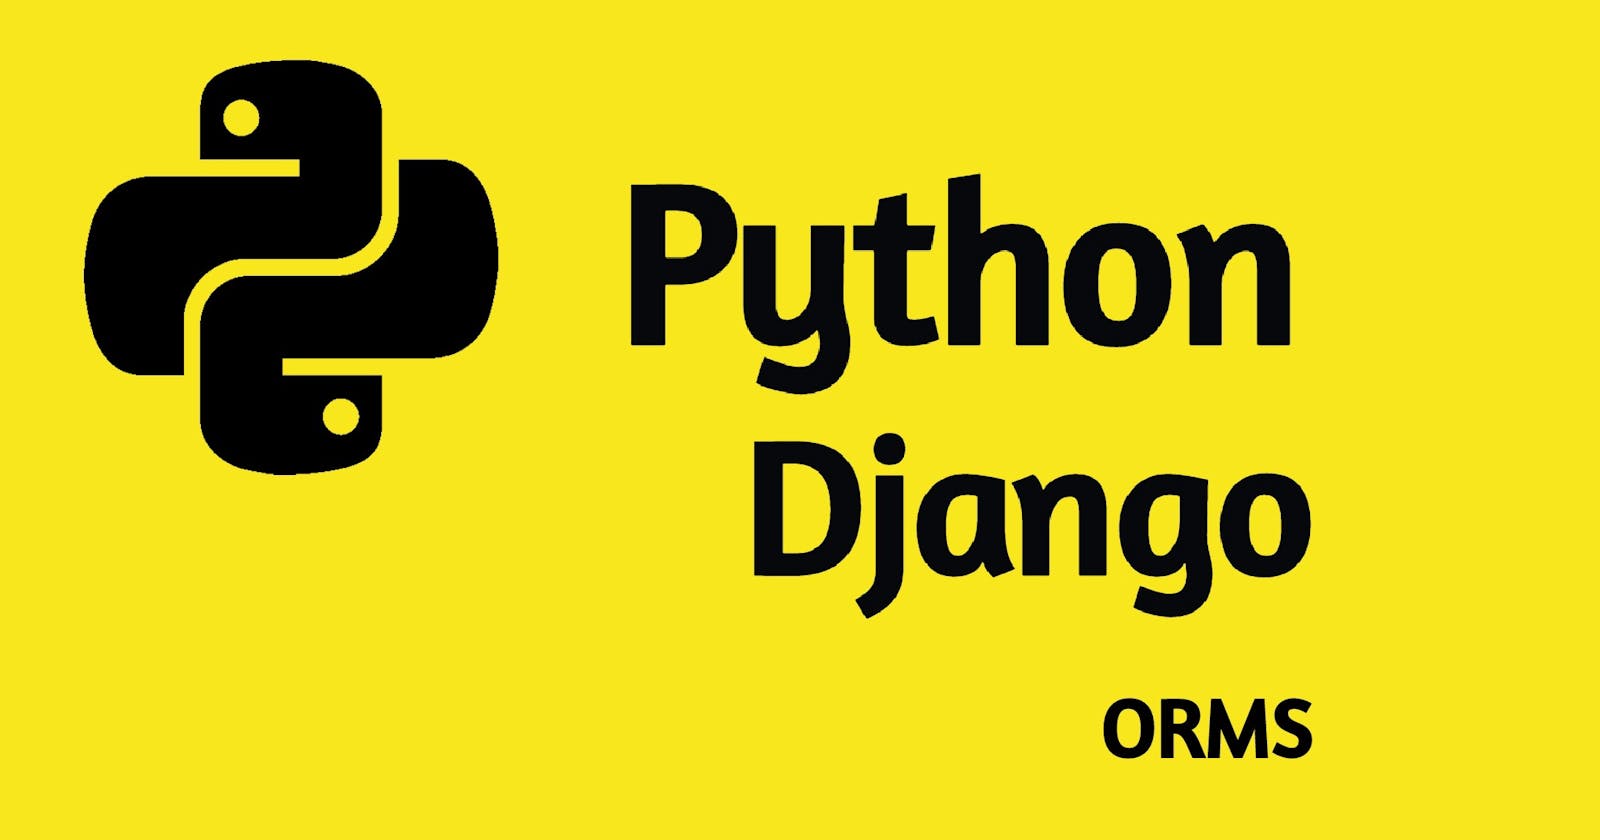 Introduction to Django ORMS